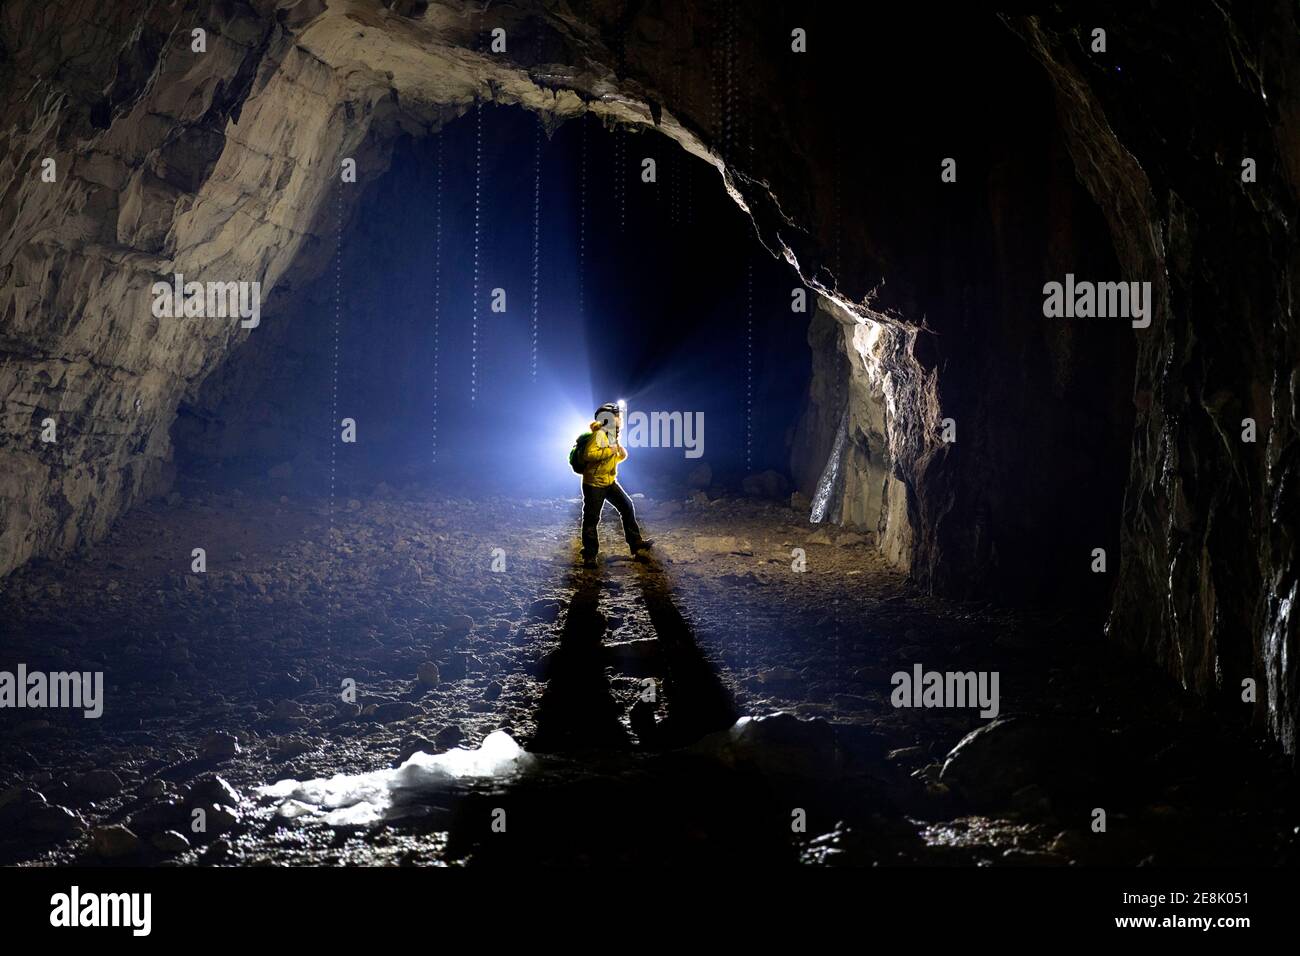 Ragazzo di 11 anni in piedi all'interno di una grotta, illuminato da una retroilluminazione, stalagmiti fuse di ghiaccio nella parte anteriore, Slovenia Foto Stock